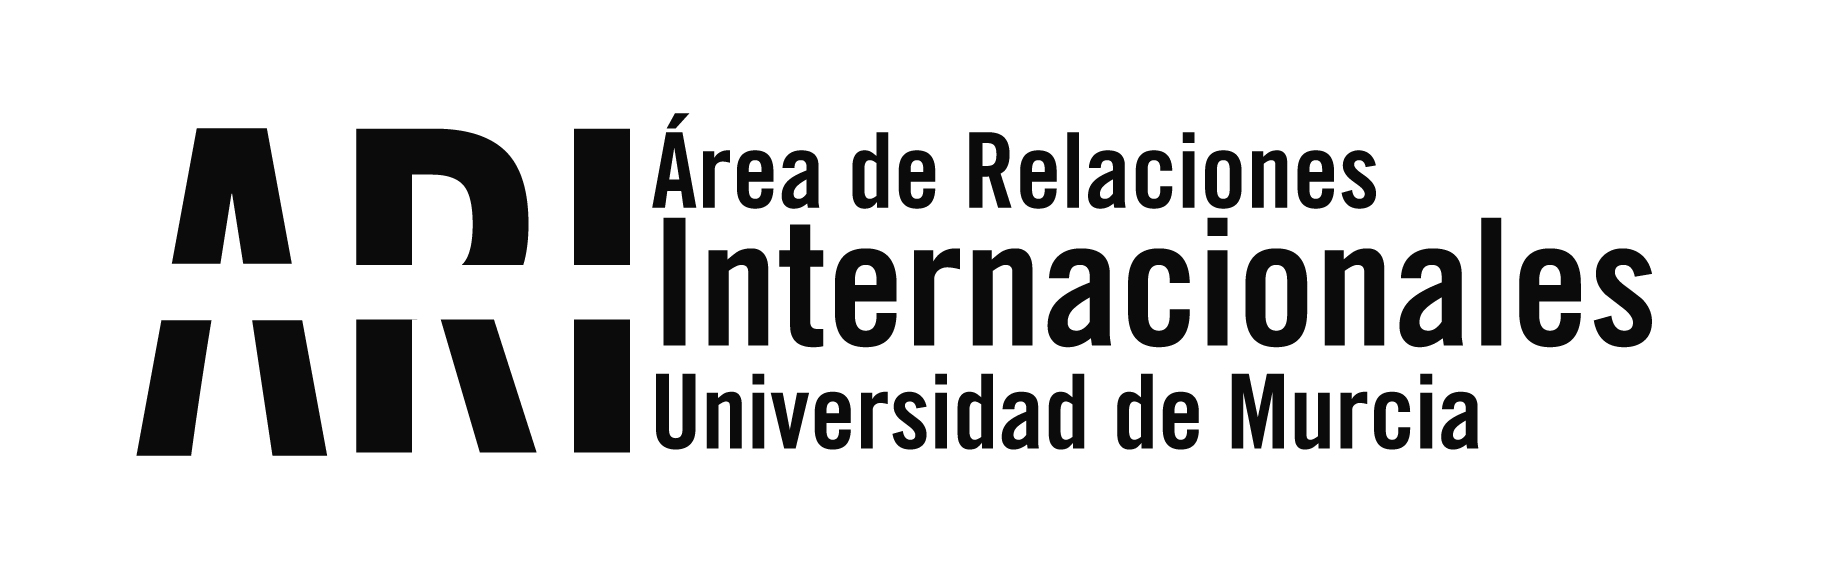 Una guía de la ciudad de Murcia para los estudiantes internacionales - Área de Relaciones Internacionales